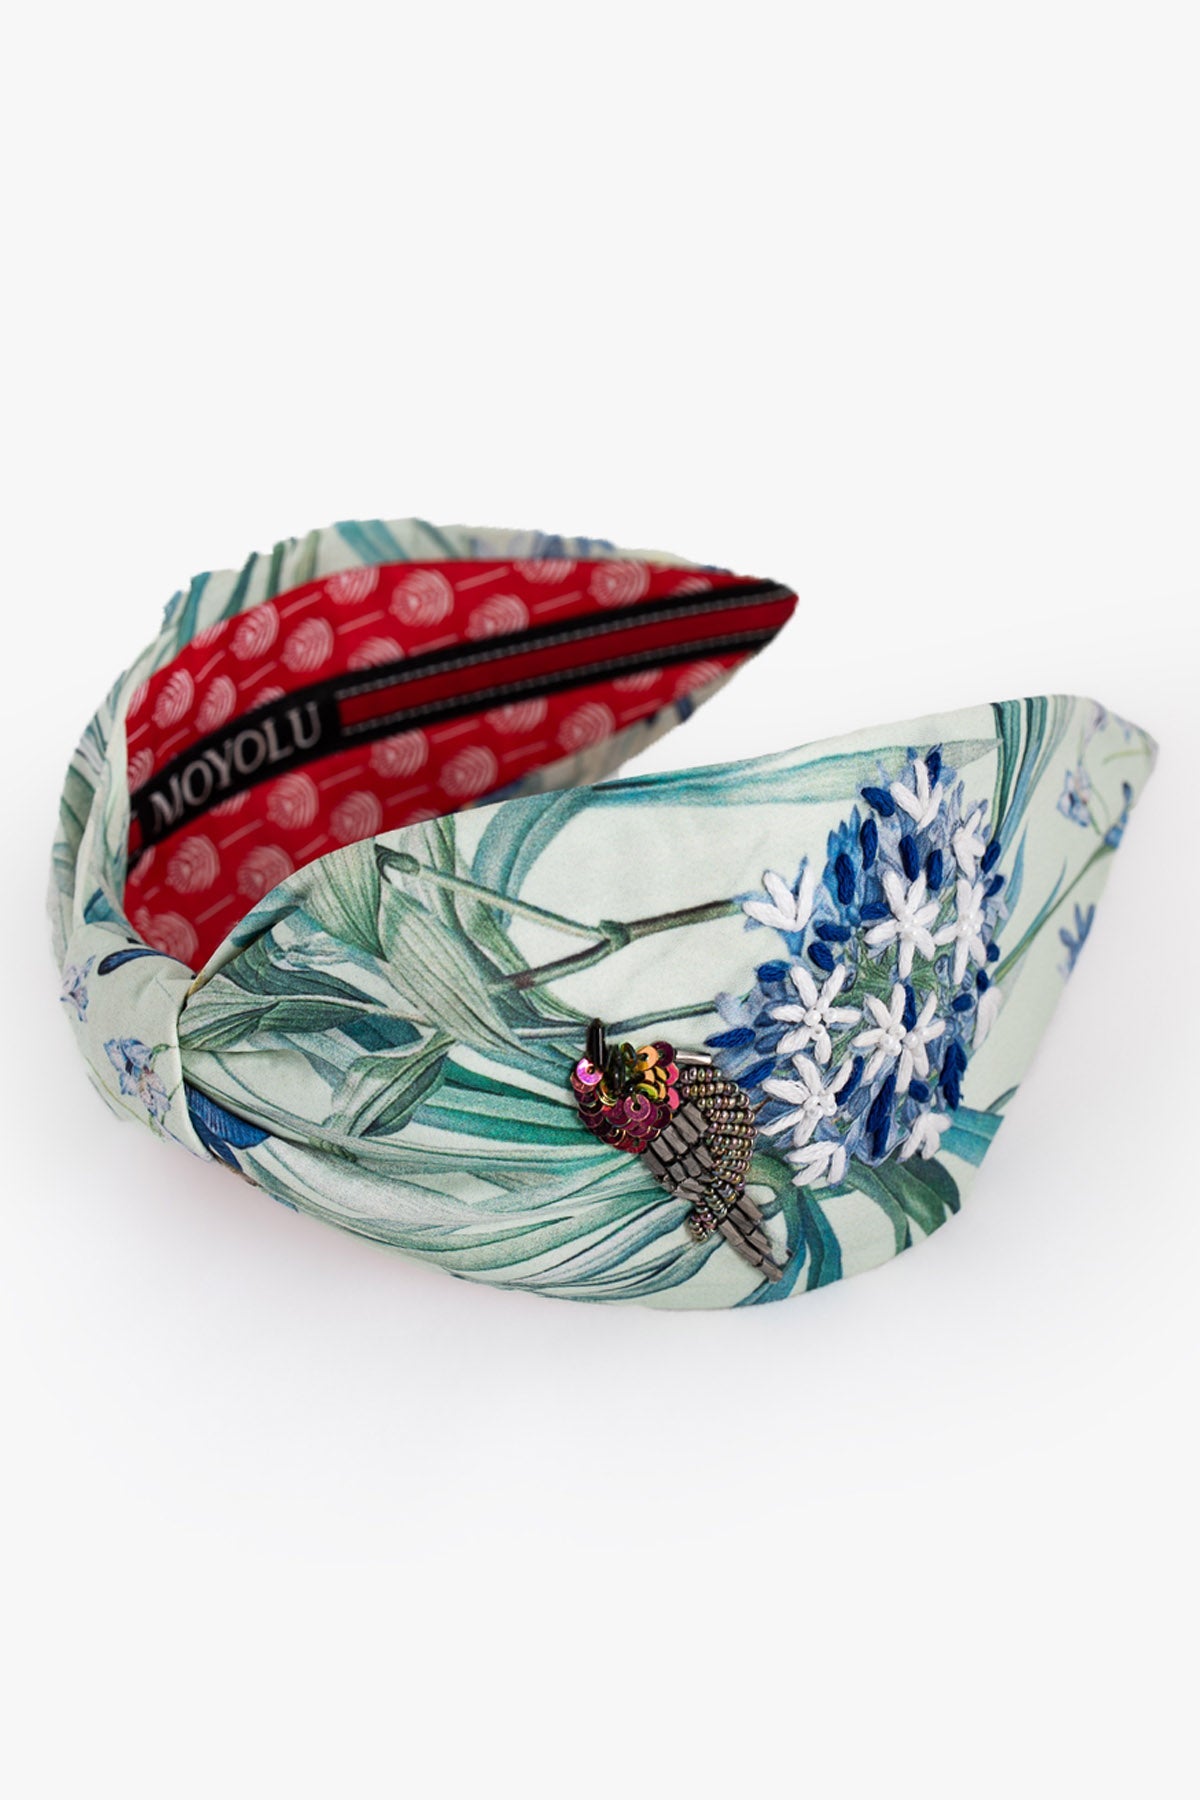 Moyolu Mint Satin Bird Design Headband Accessories online at ScrollnShops